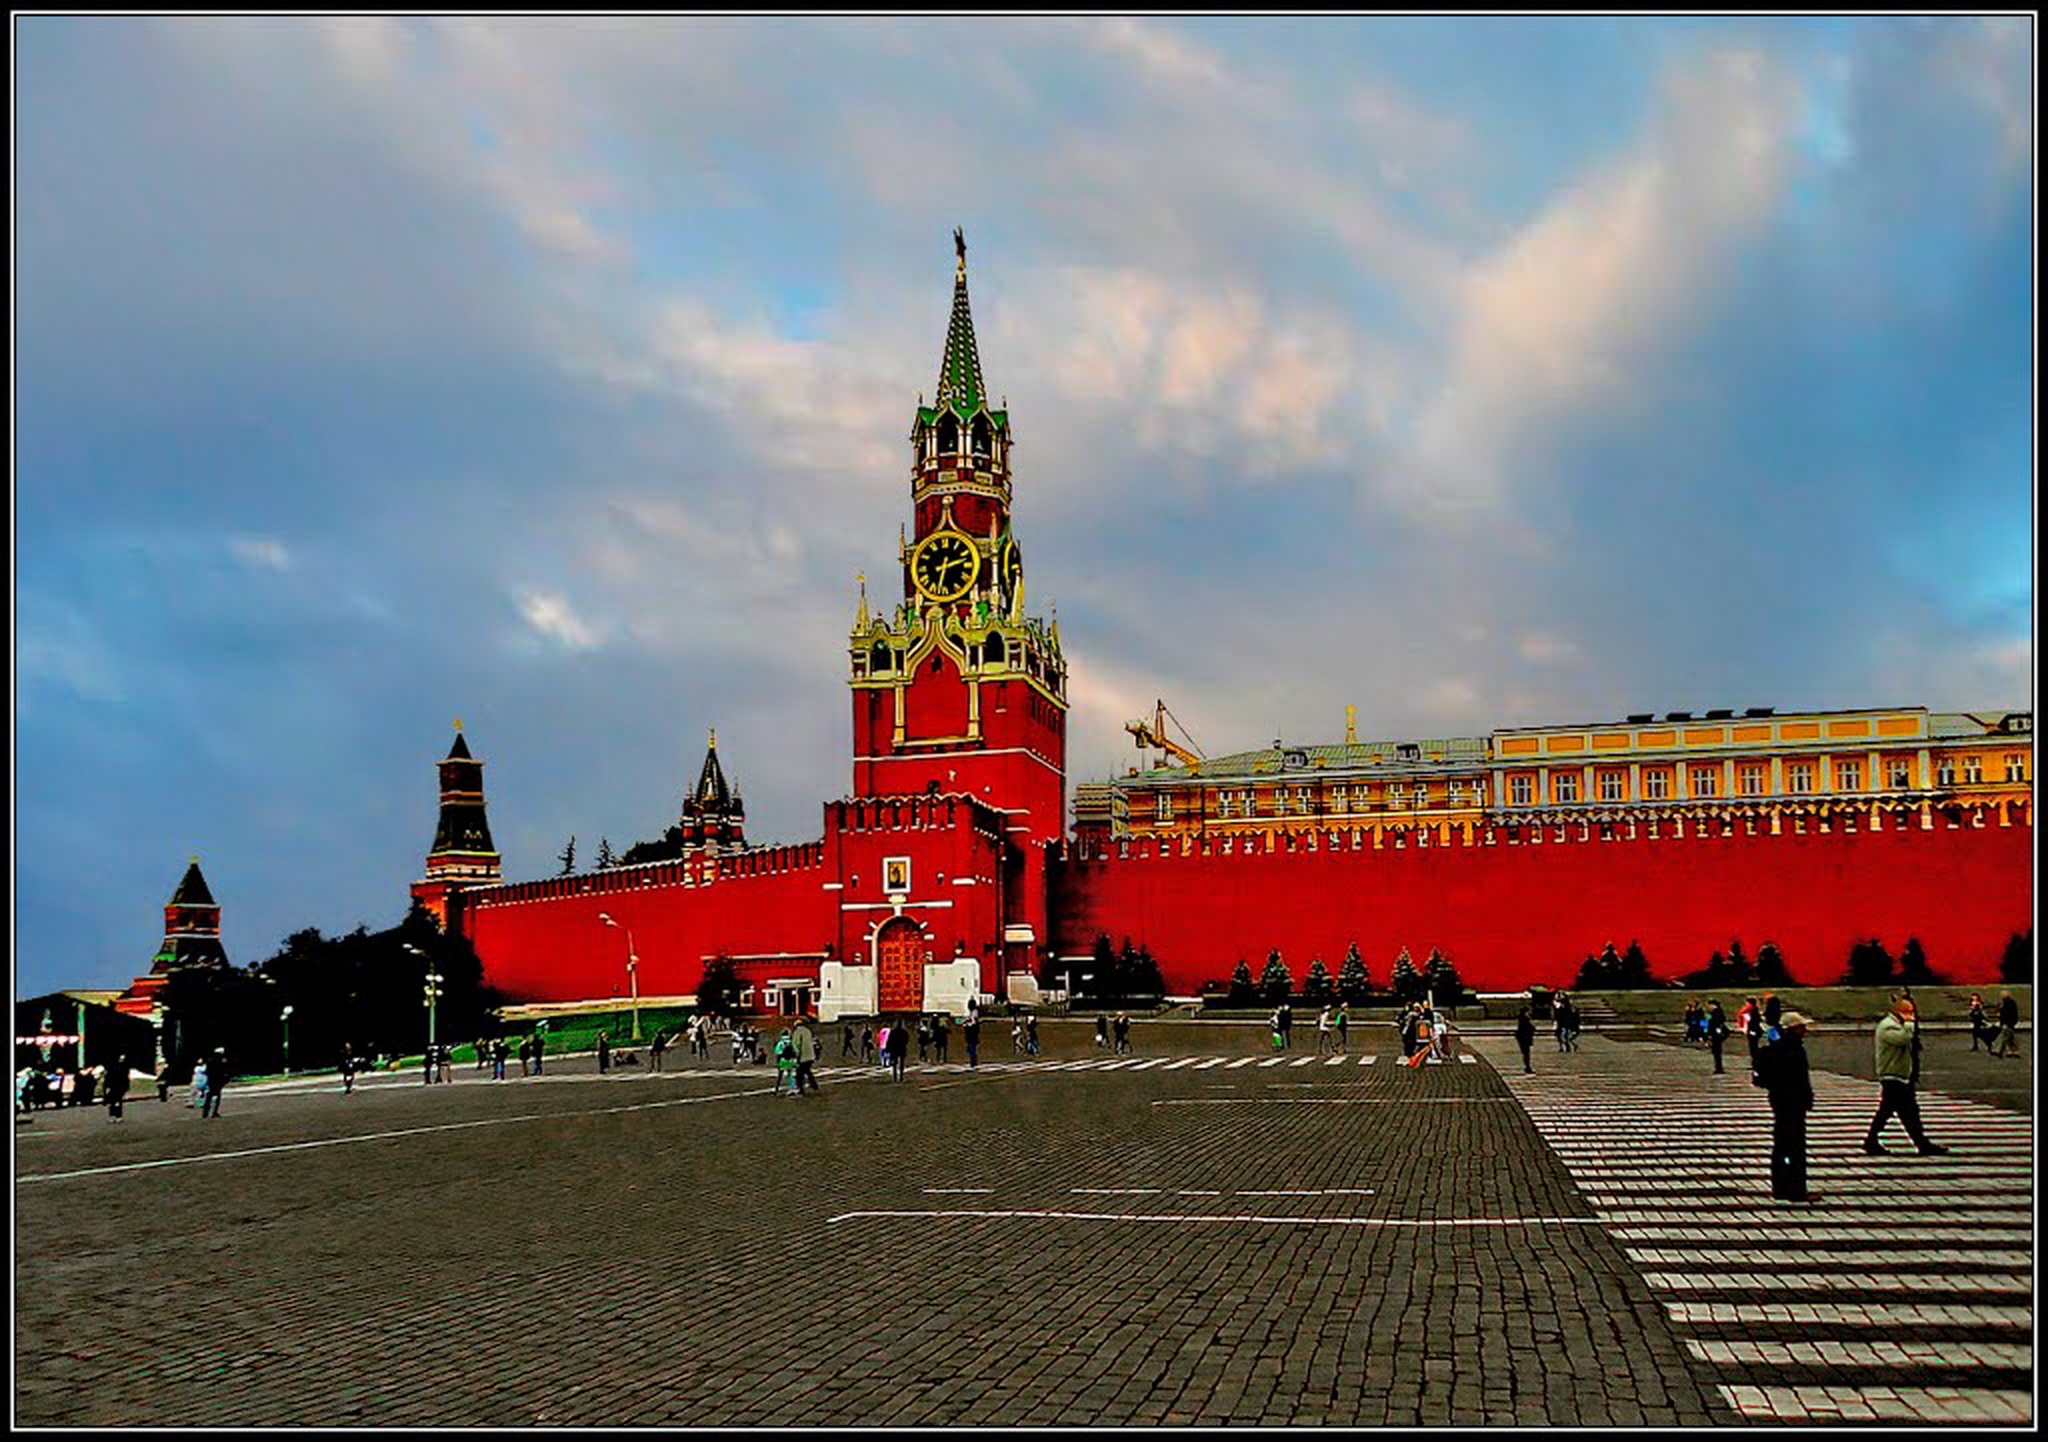 красная площадь в москве описание